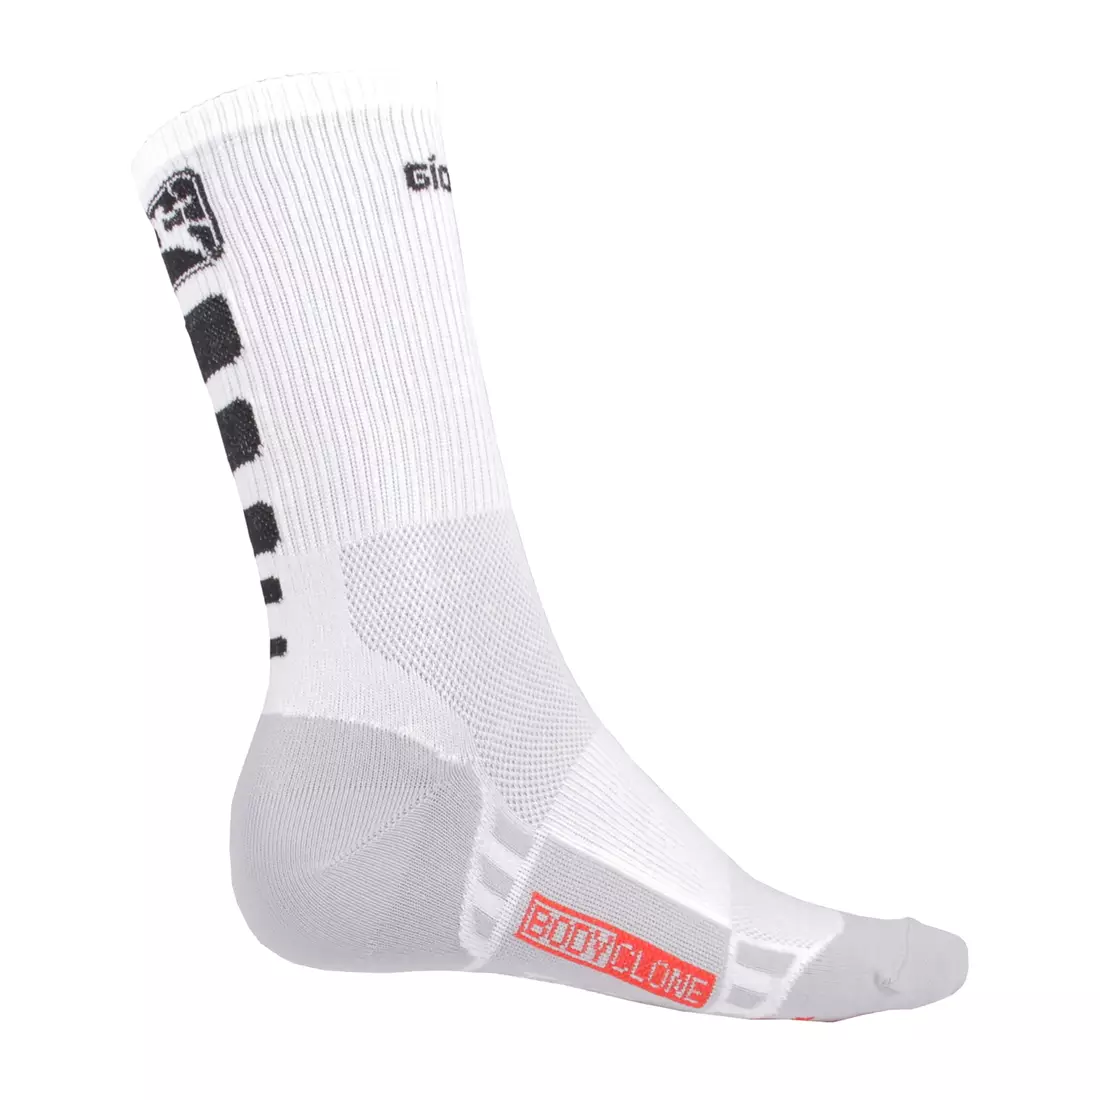 GIORDANA FR-C TALL SOCKS bielo-čierne cyklistické ponožky